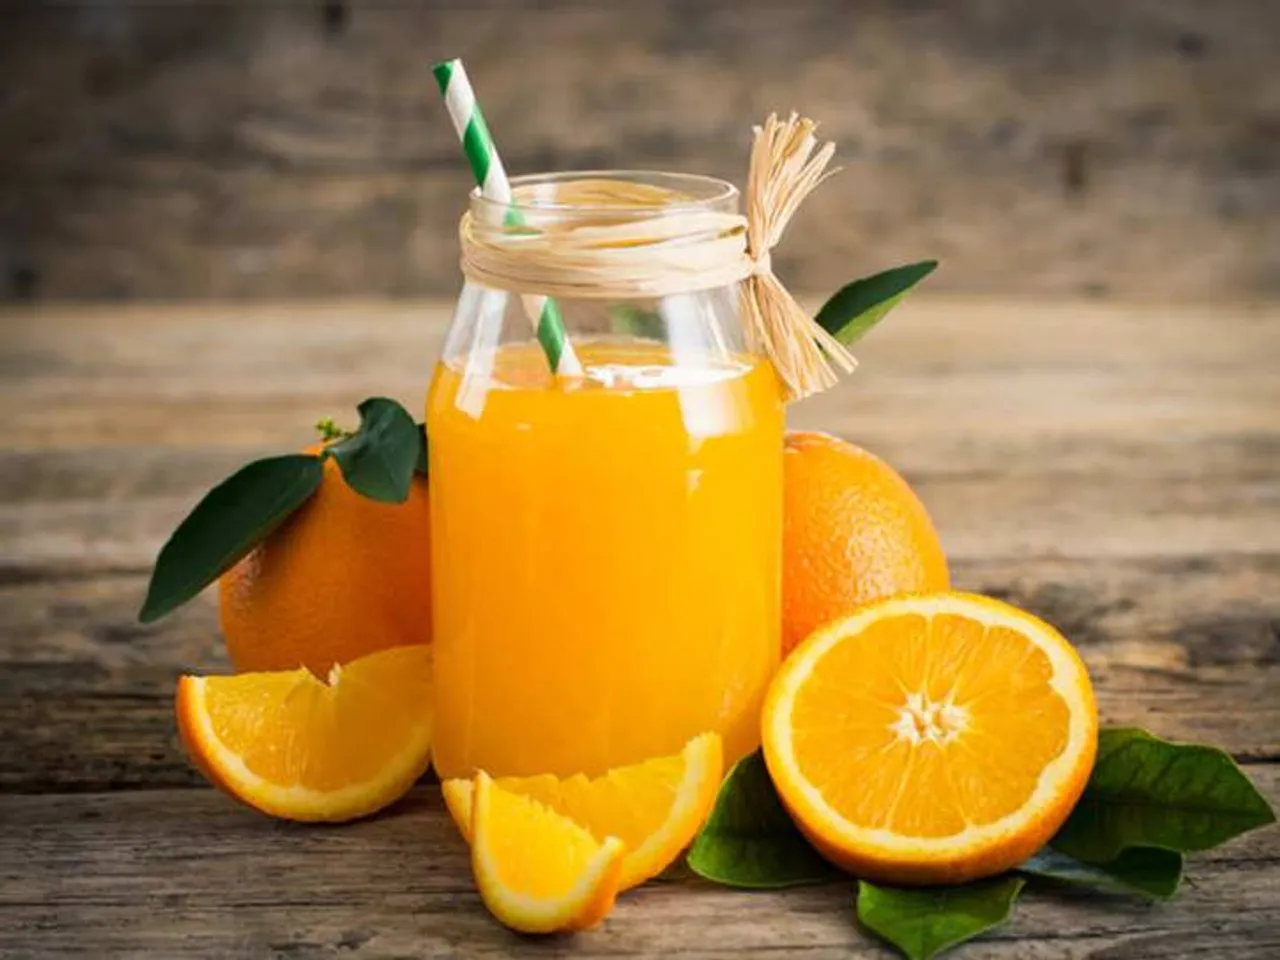 Kamala Orange benefits during winter season